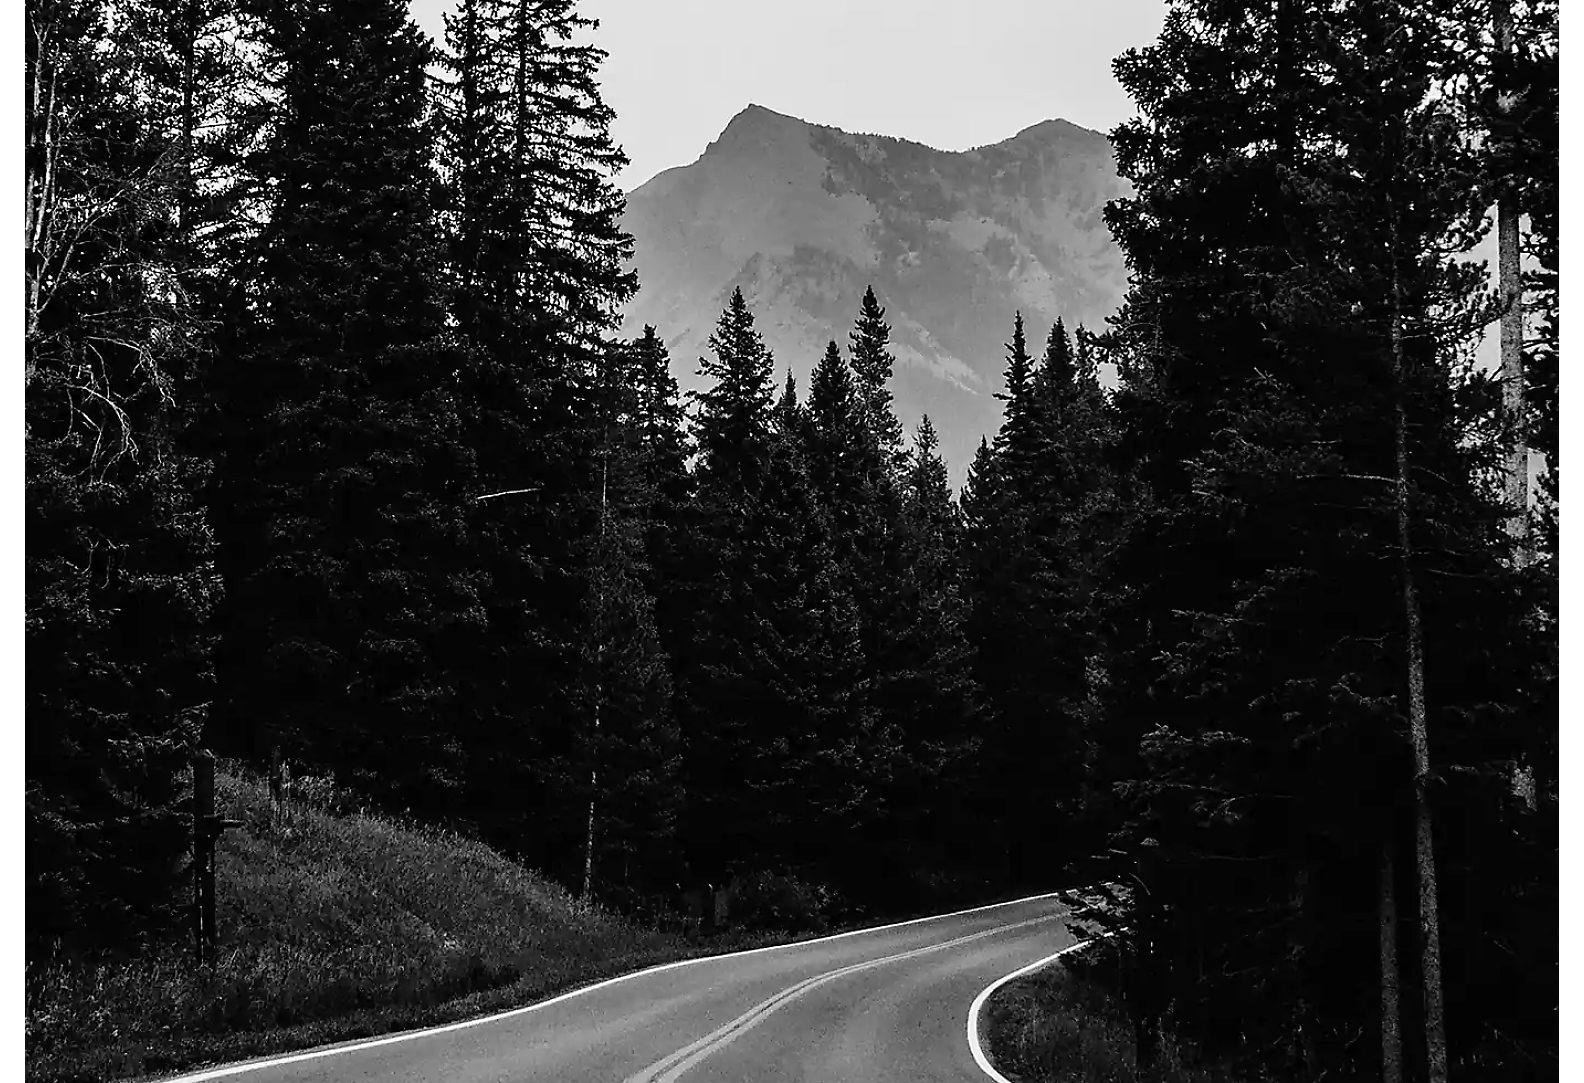 Strada a due corsie attraverso una foresta con montagna sullo sfondo, in bianco e nero.